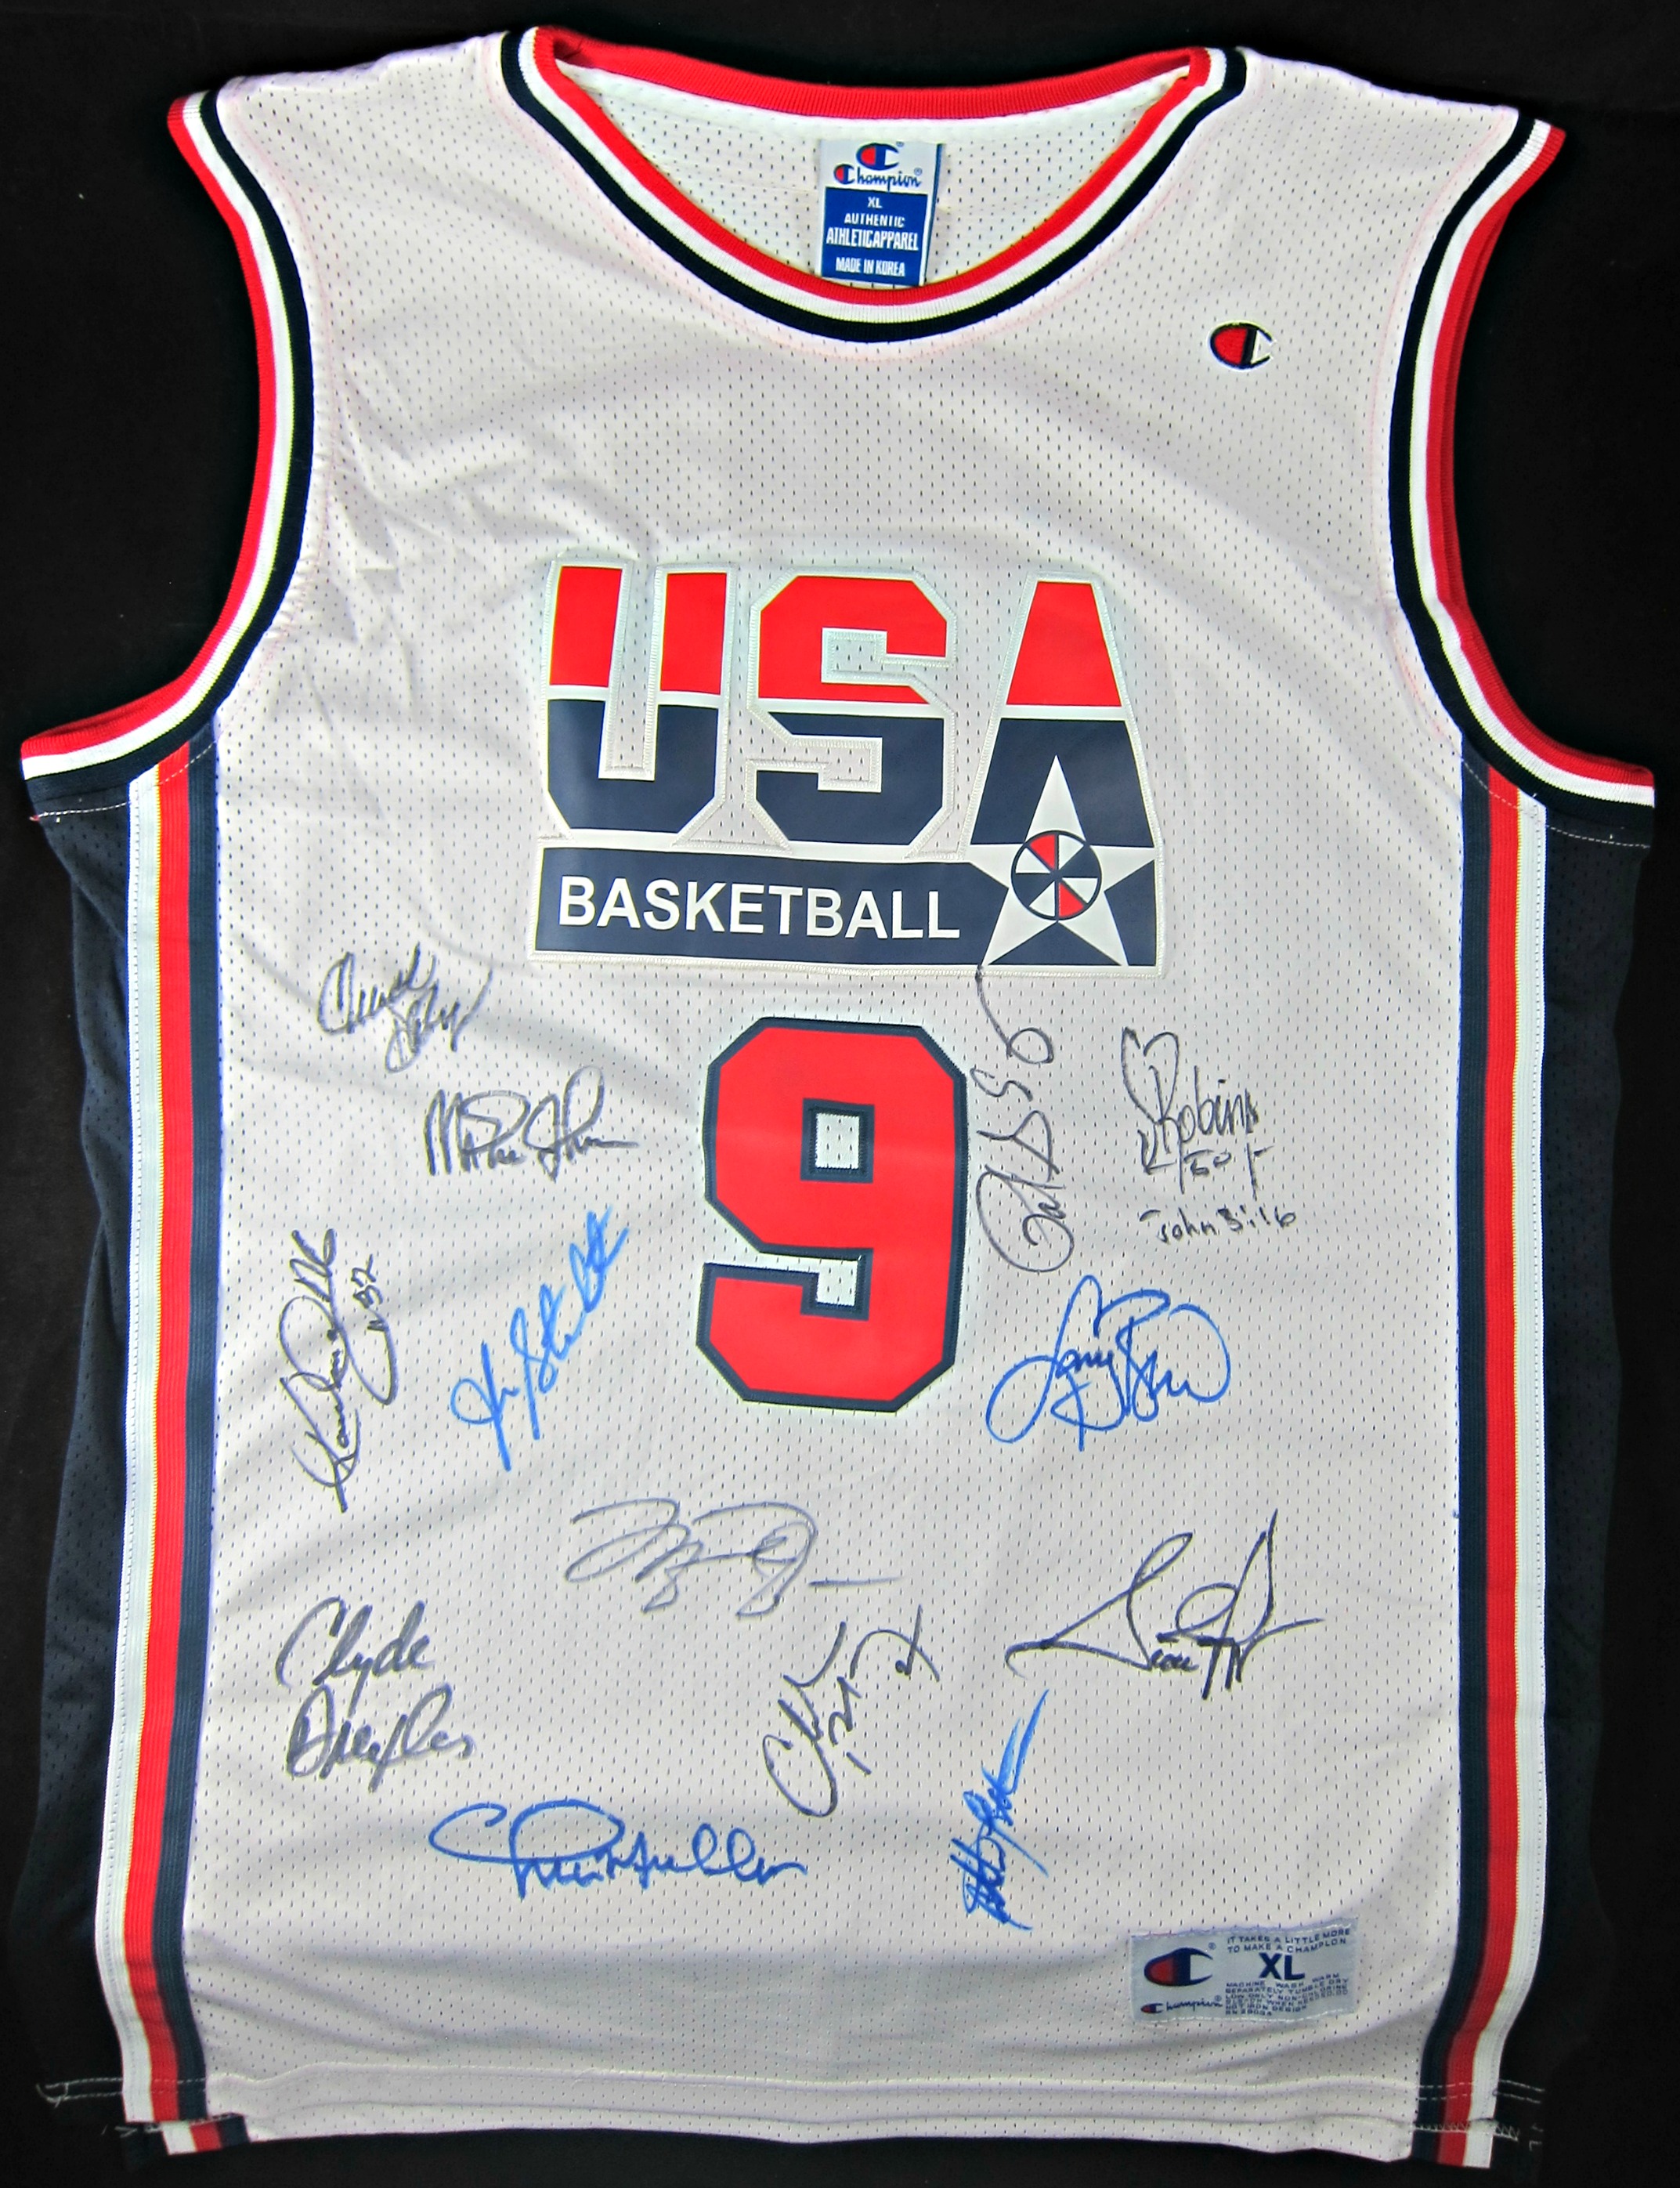 1992-usa-basketball-team-signed-jersey - Memorabilia Center